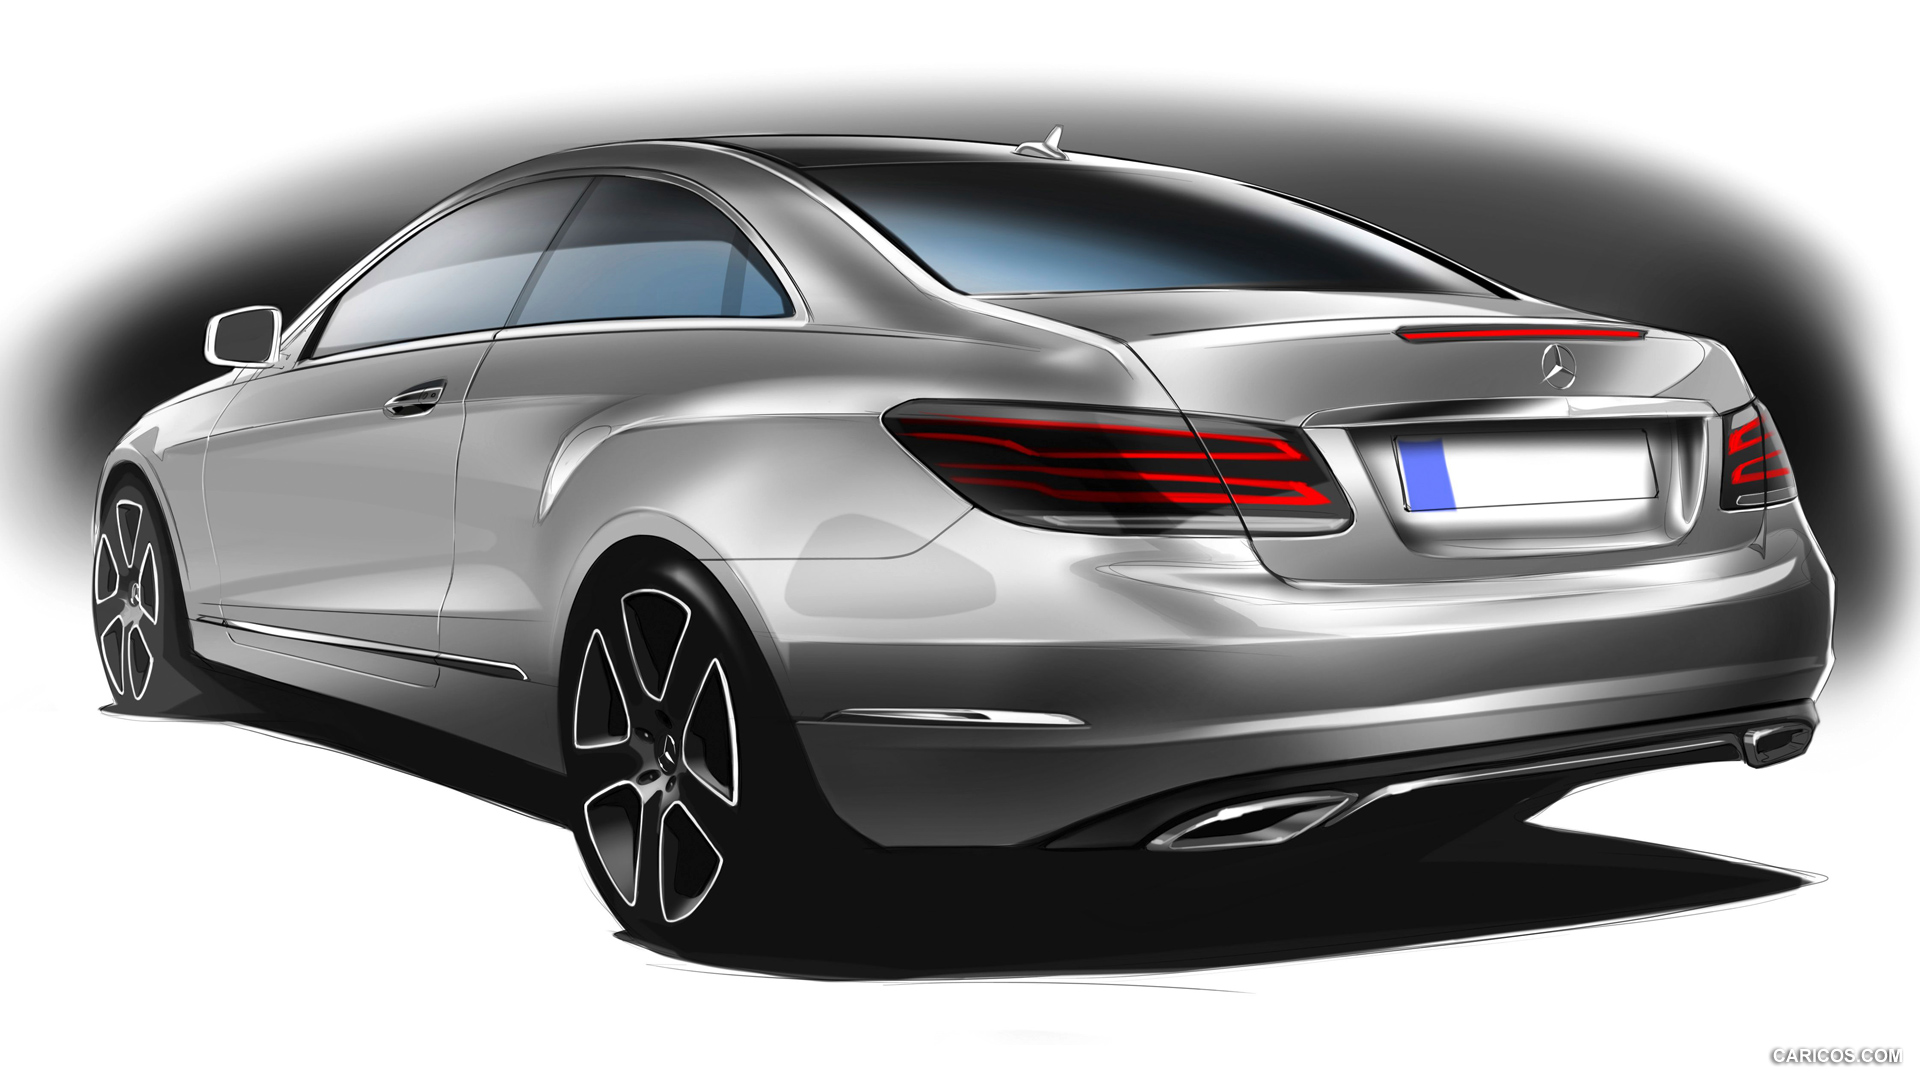 2014 Mercedes-Benz E-Class Coupe  - Design Sketch, #61 of 78